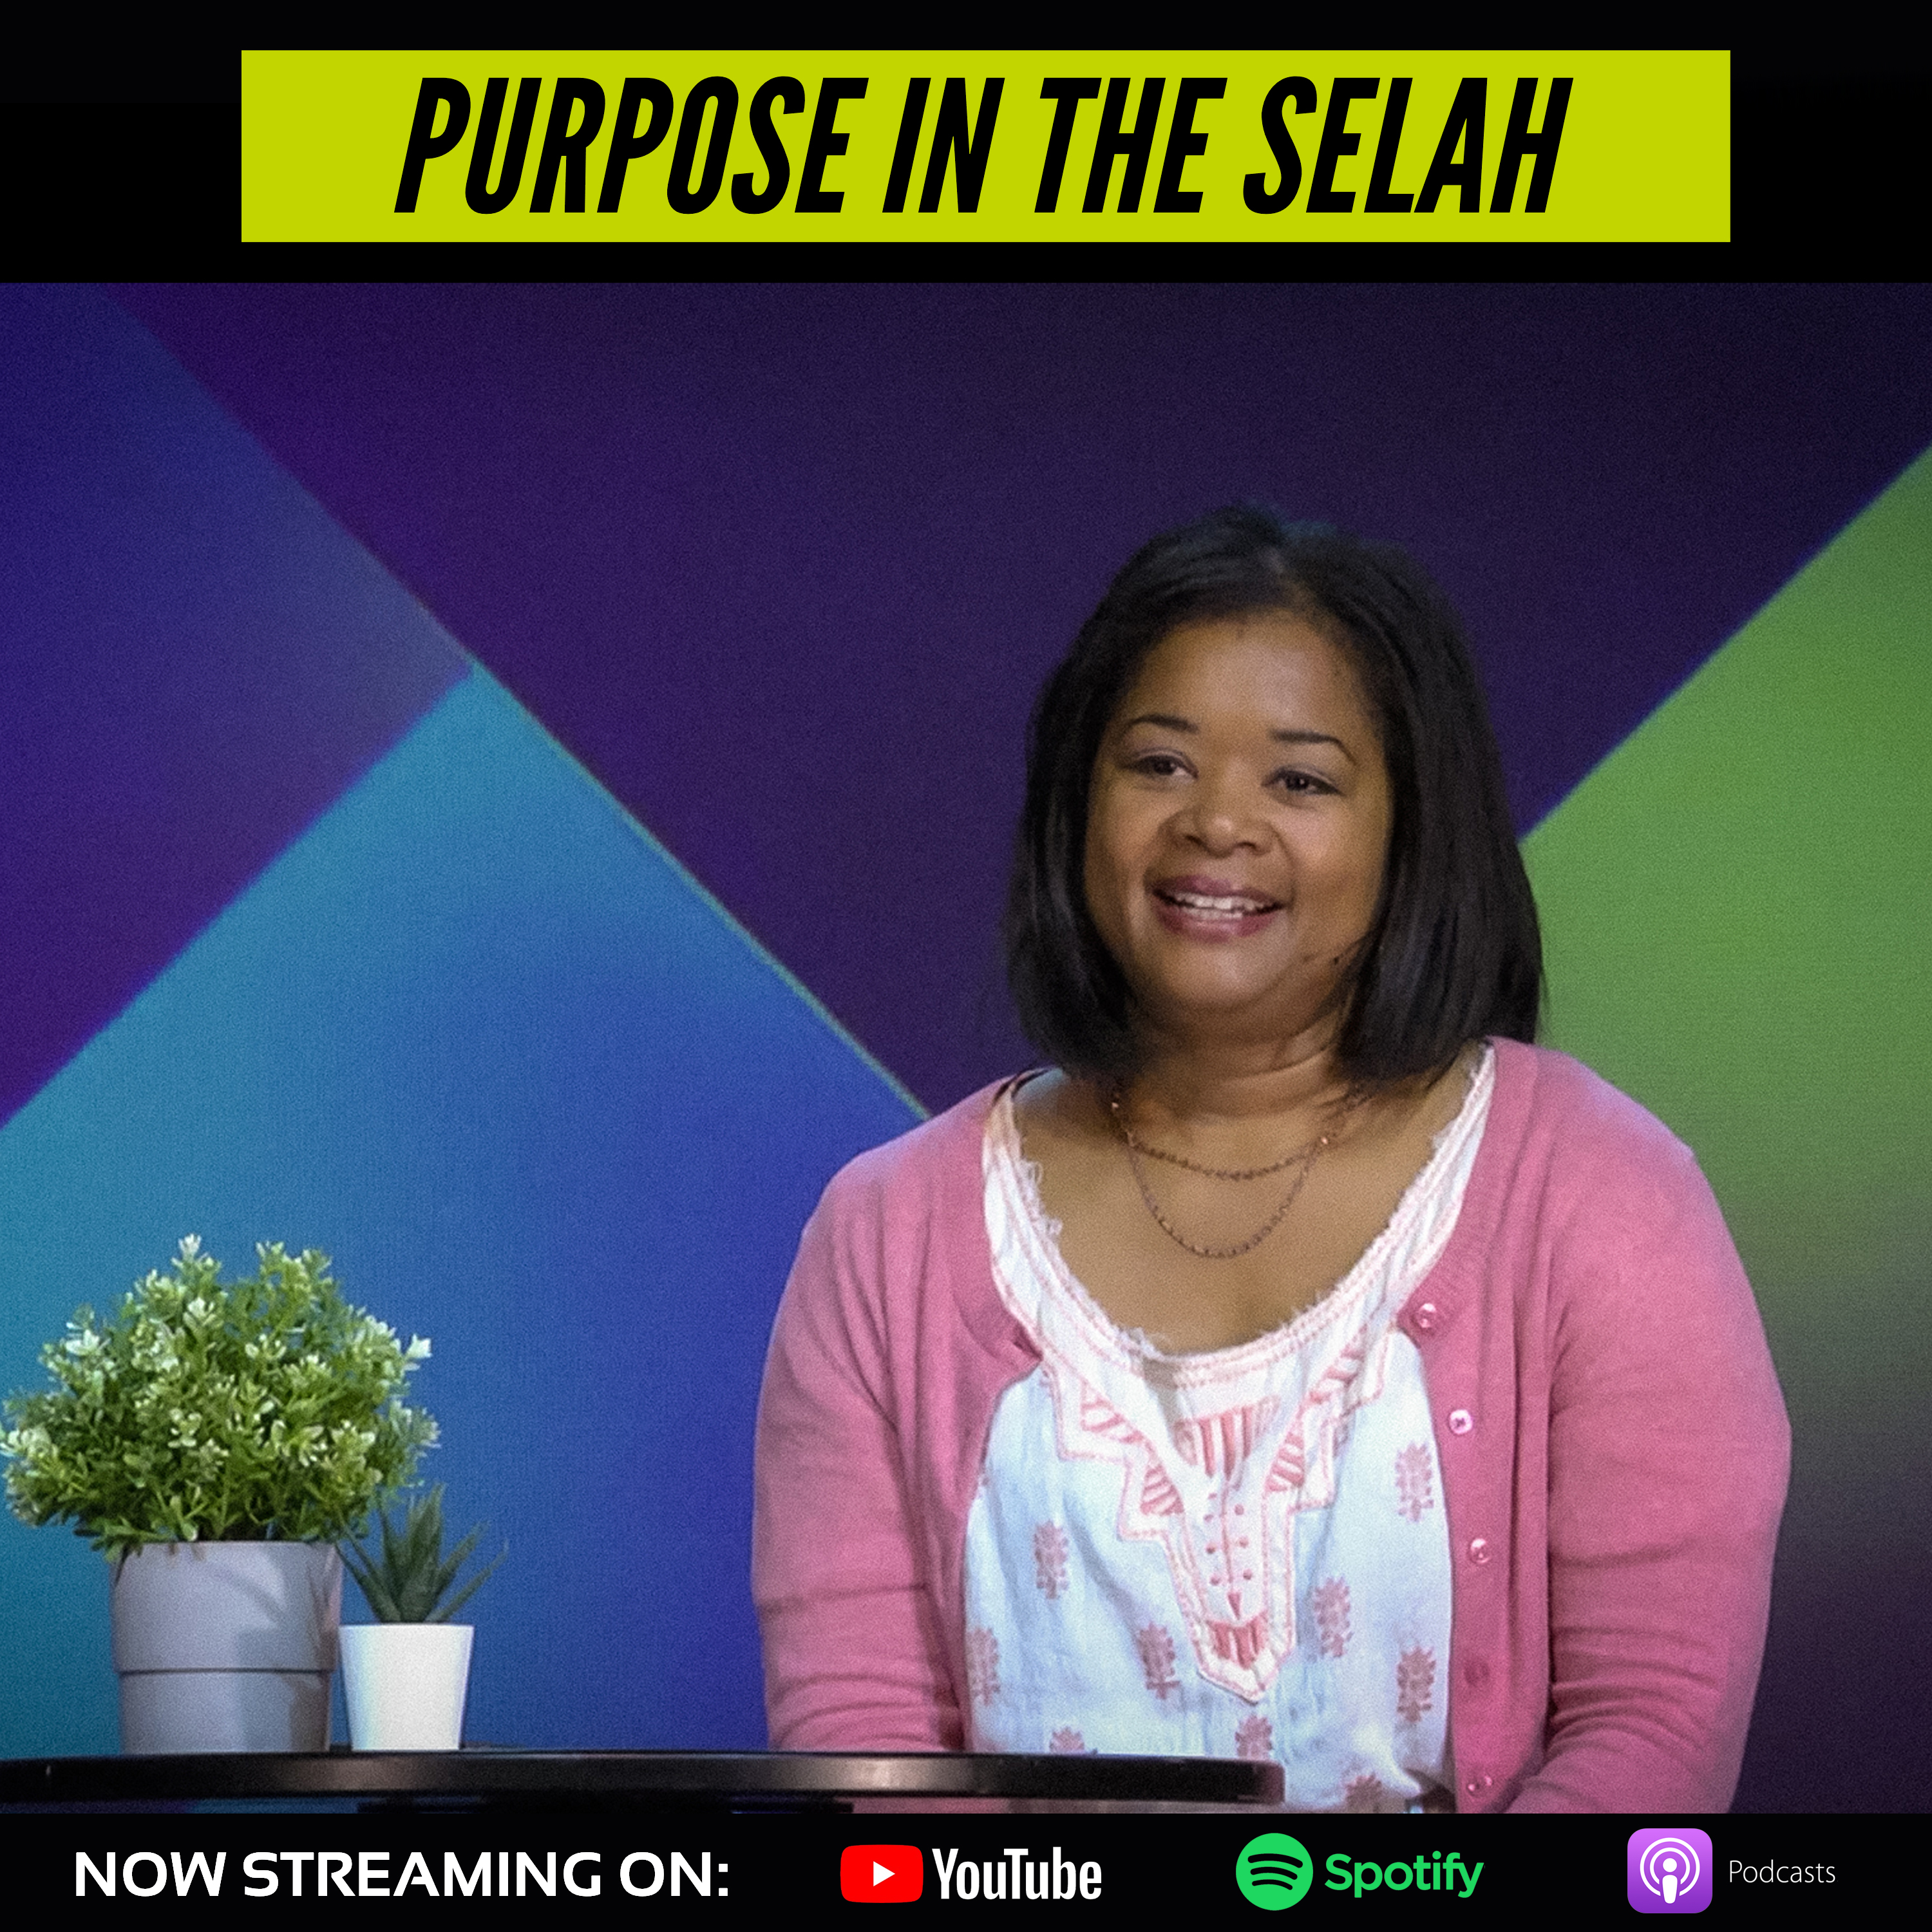 Purpose in the Selah - Amber Cavazos